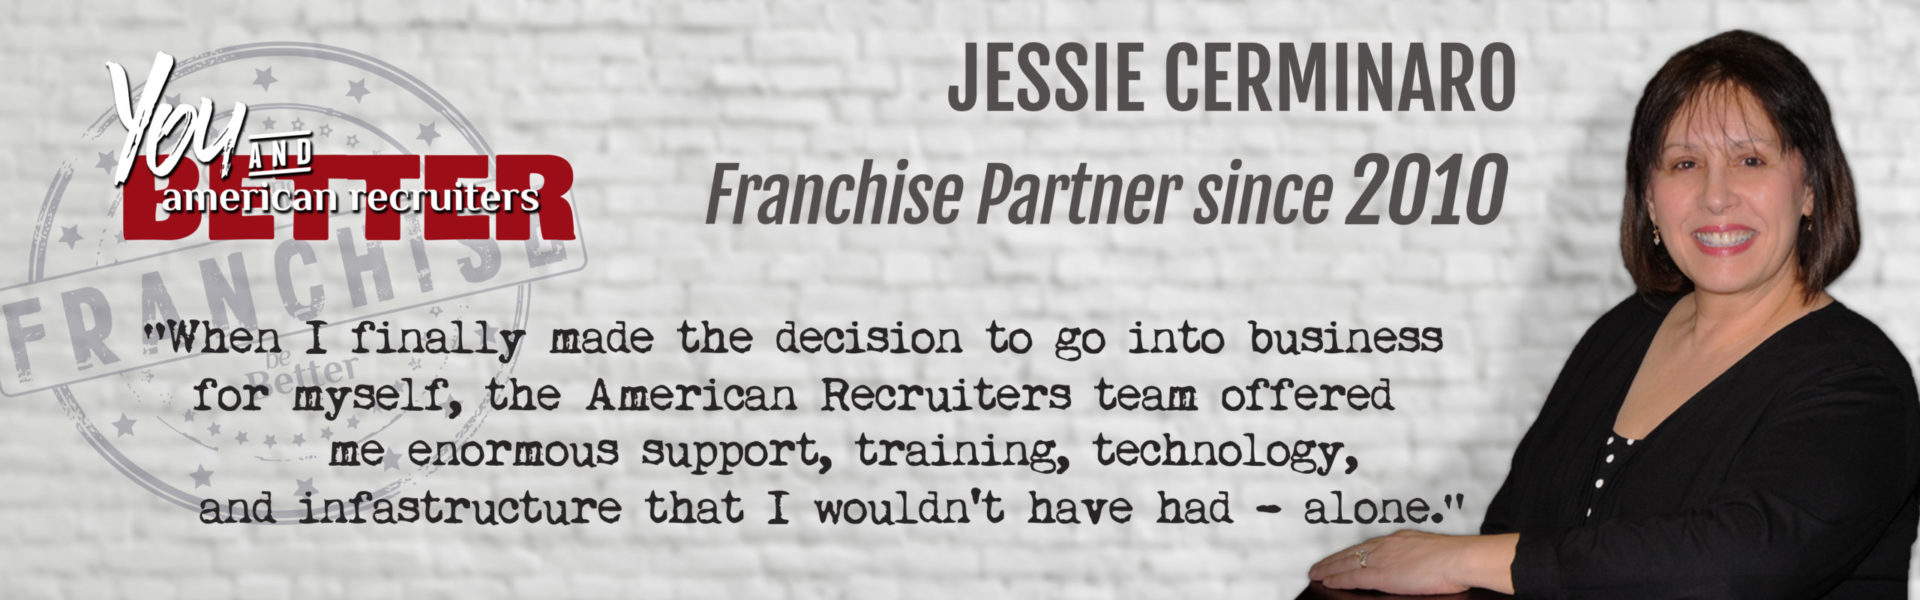 franchise-owner-testimonial-jessie-cerminaro